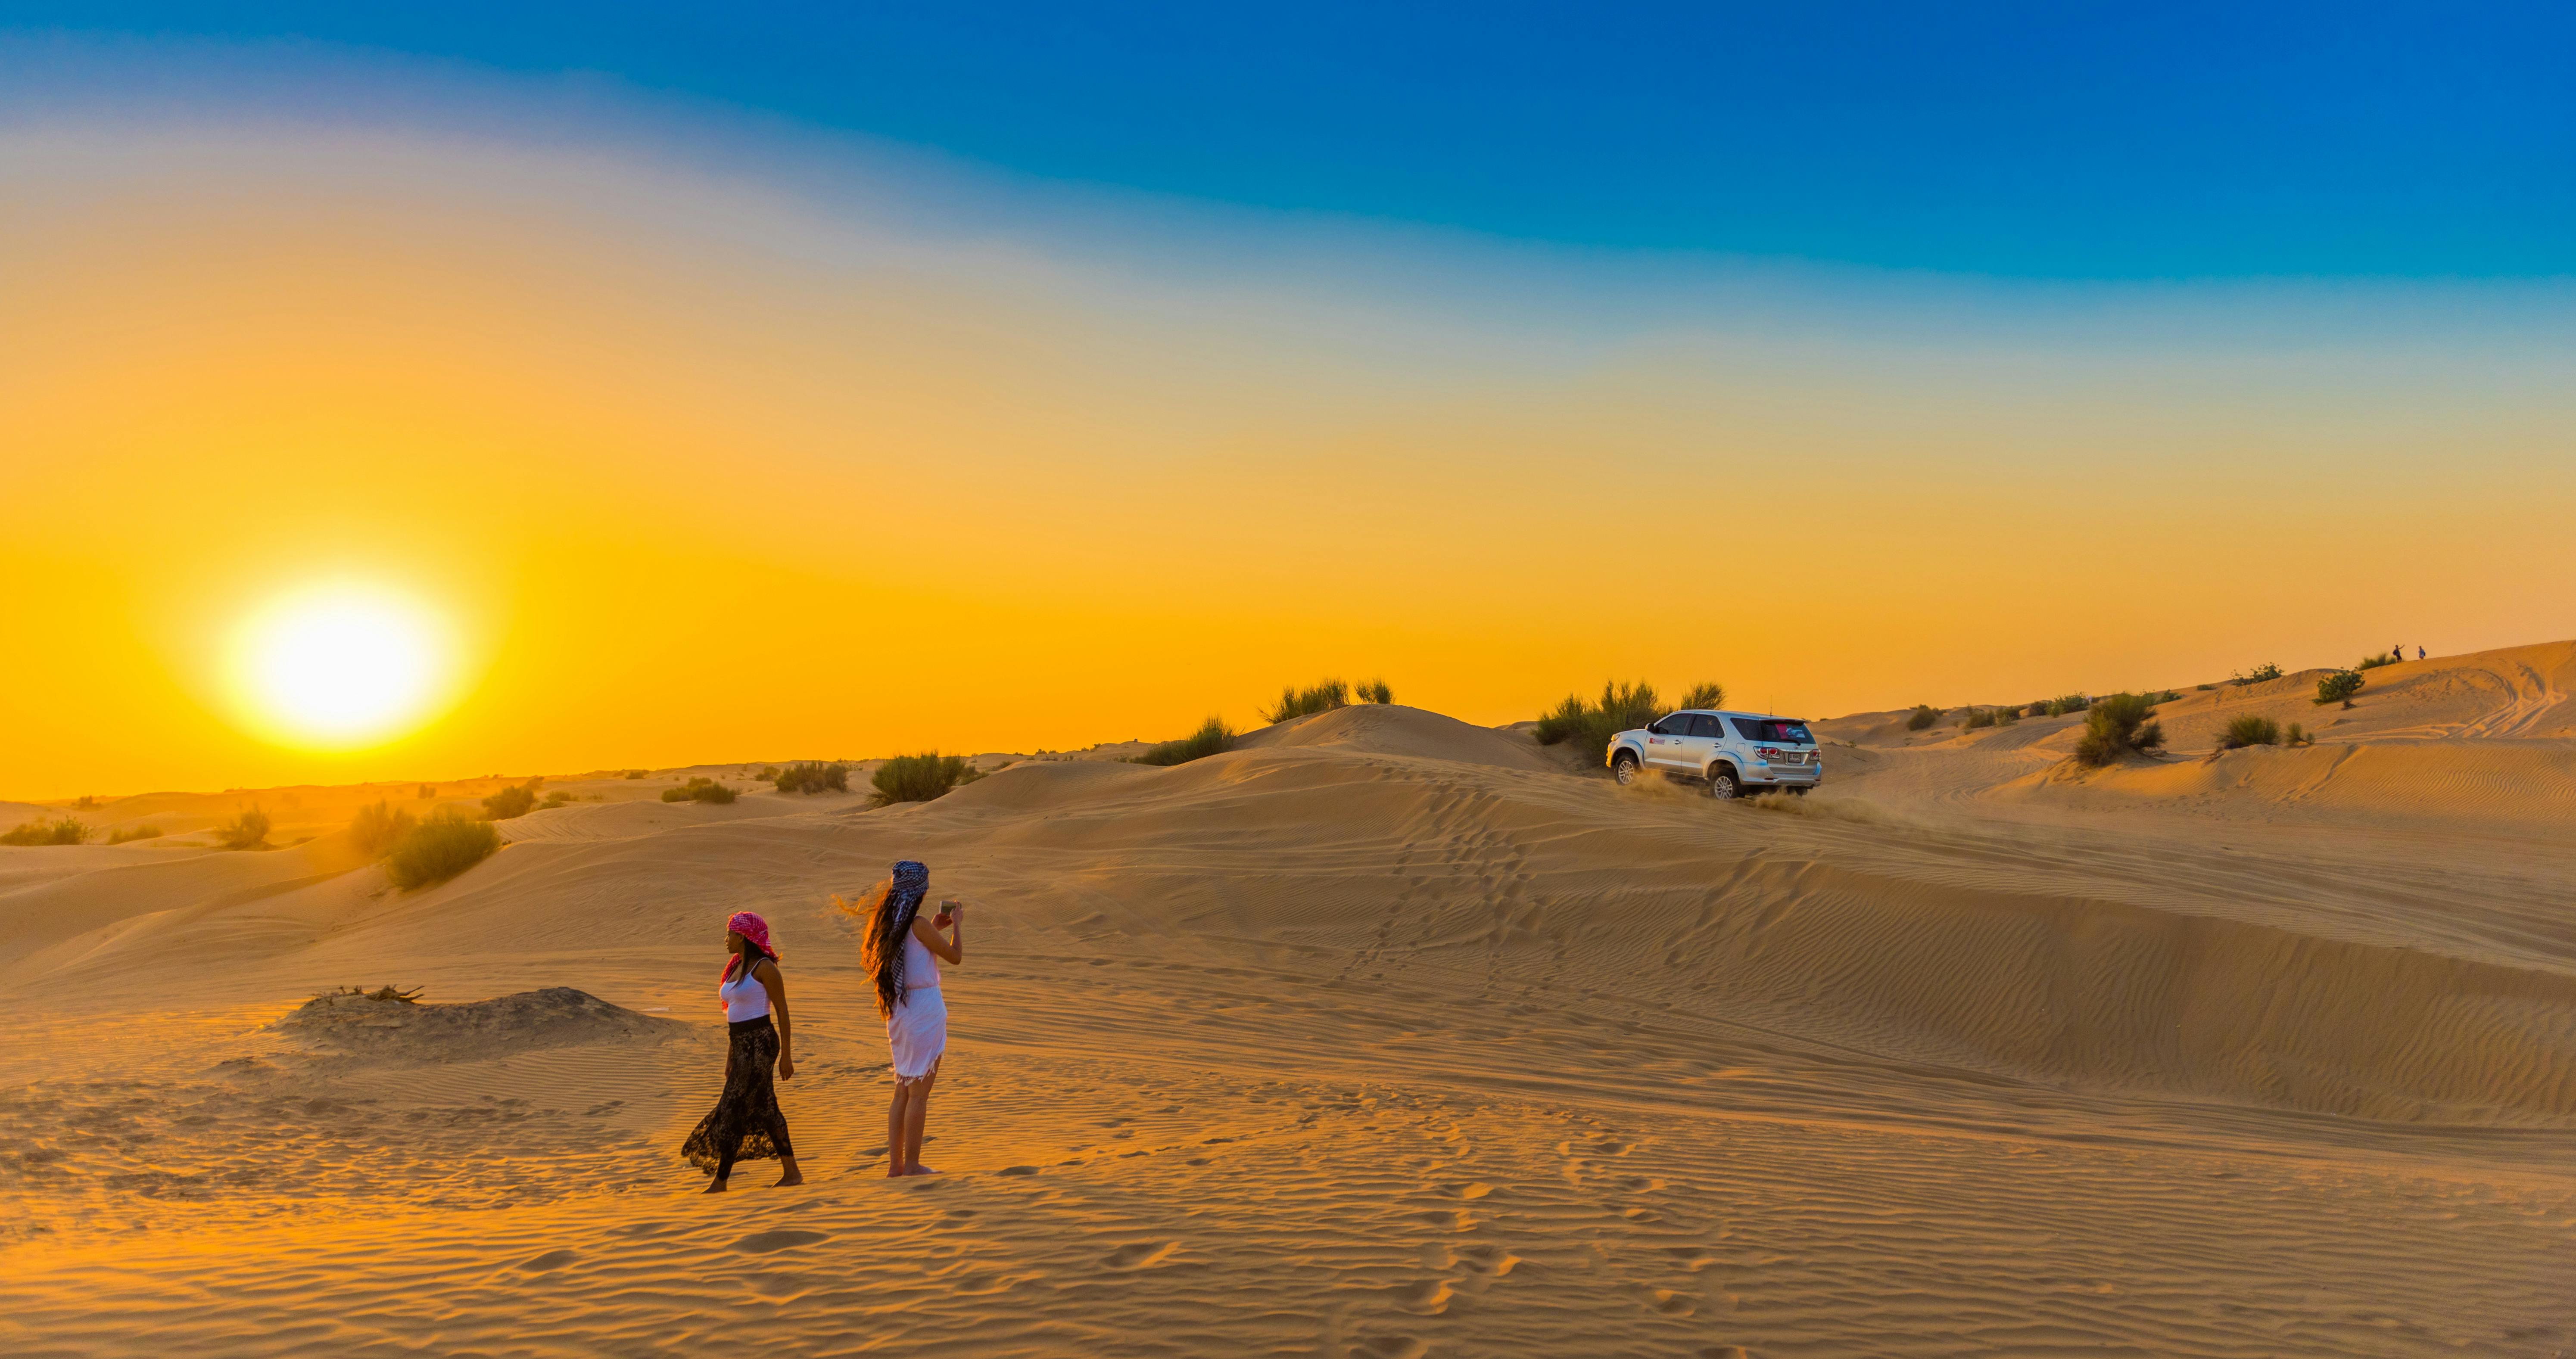 Reserva de conservación del desierto de Dubái